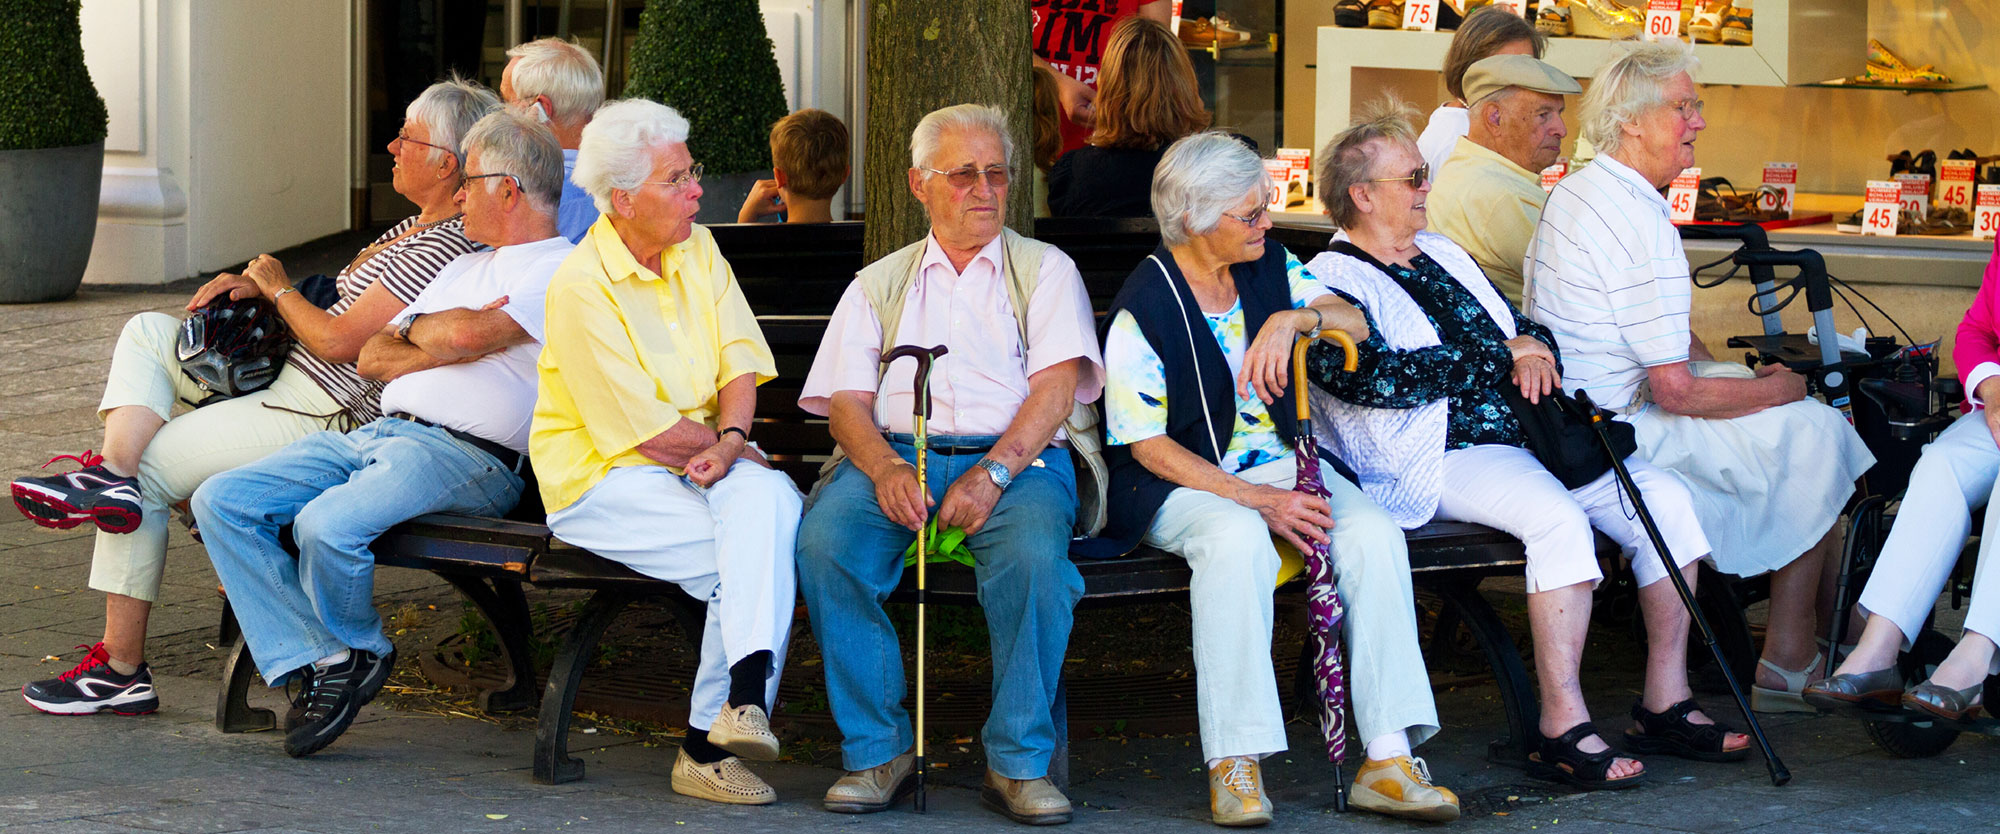 Senior citizens sitting under a tree in Baden-Baden